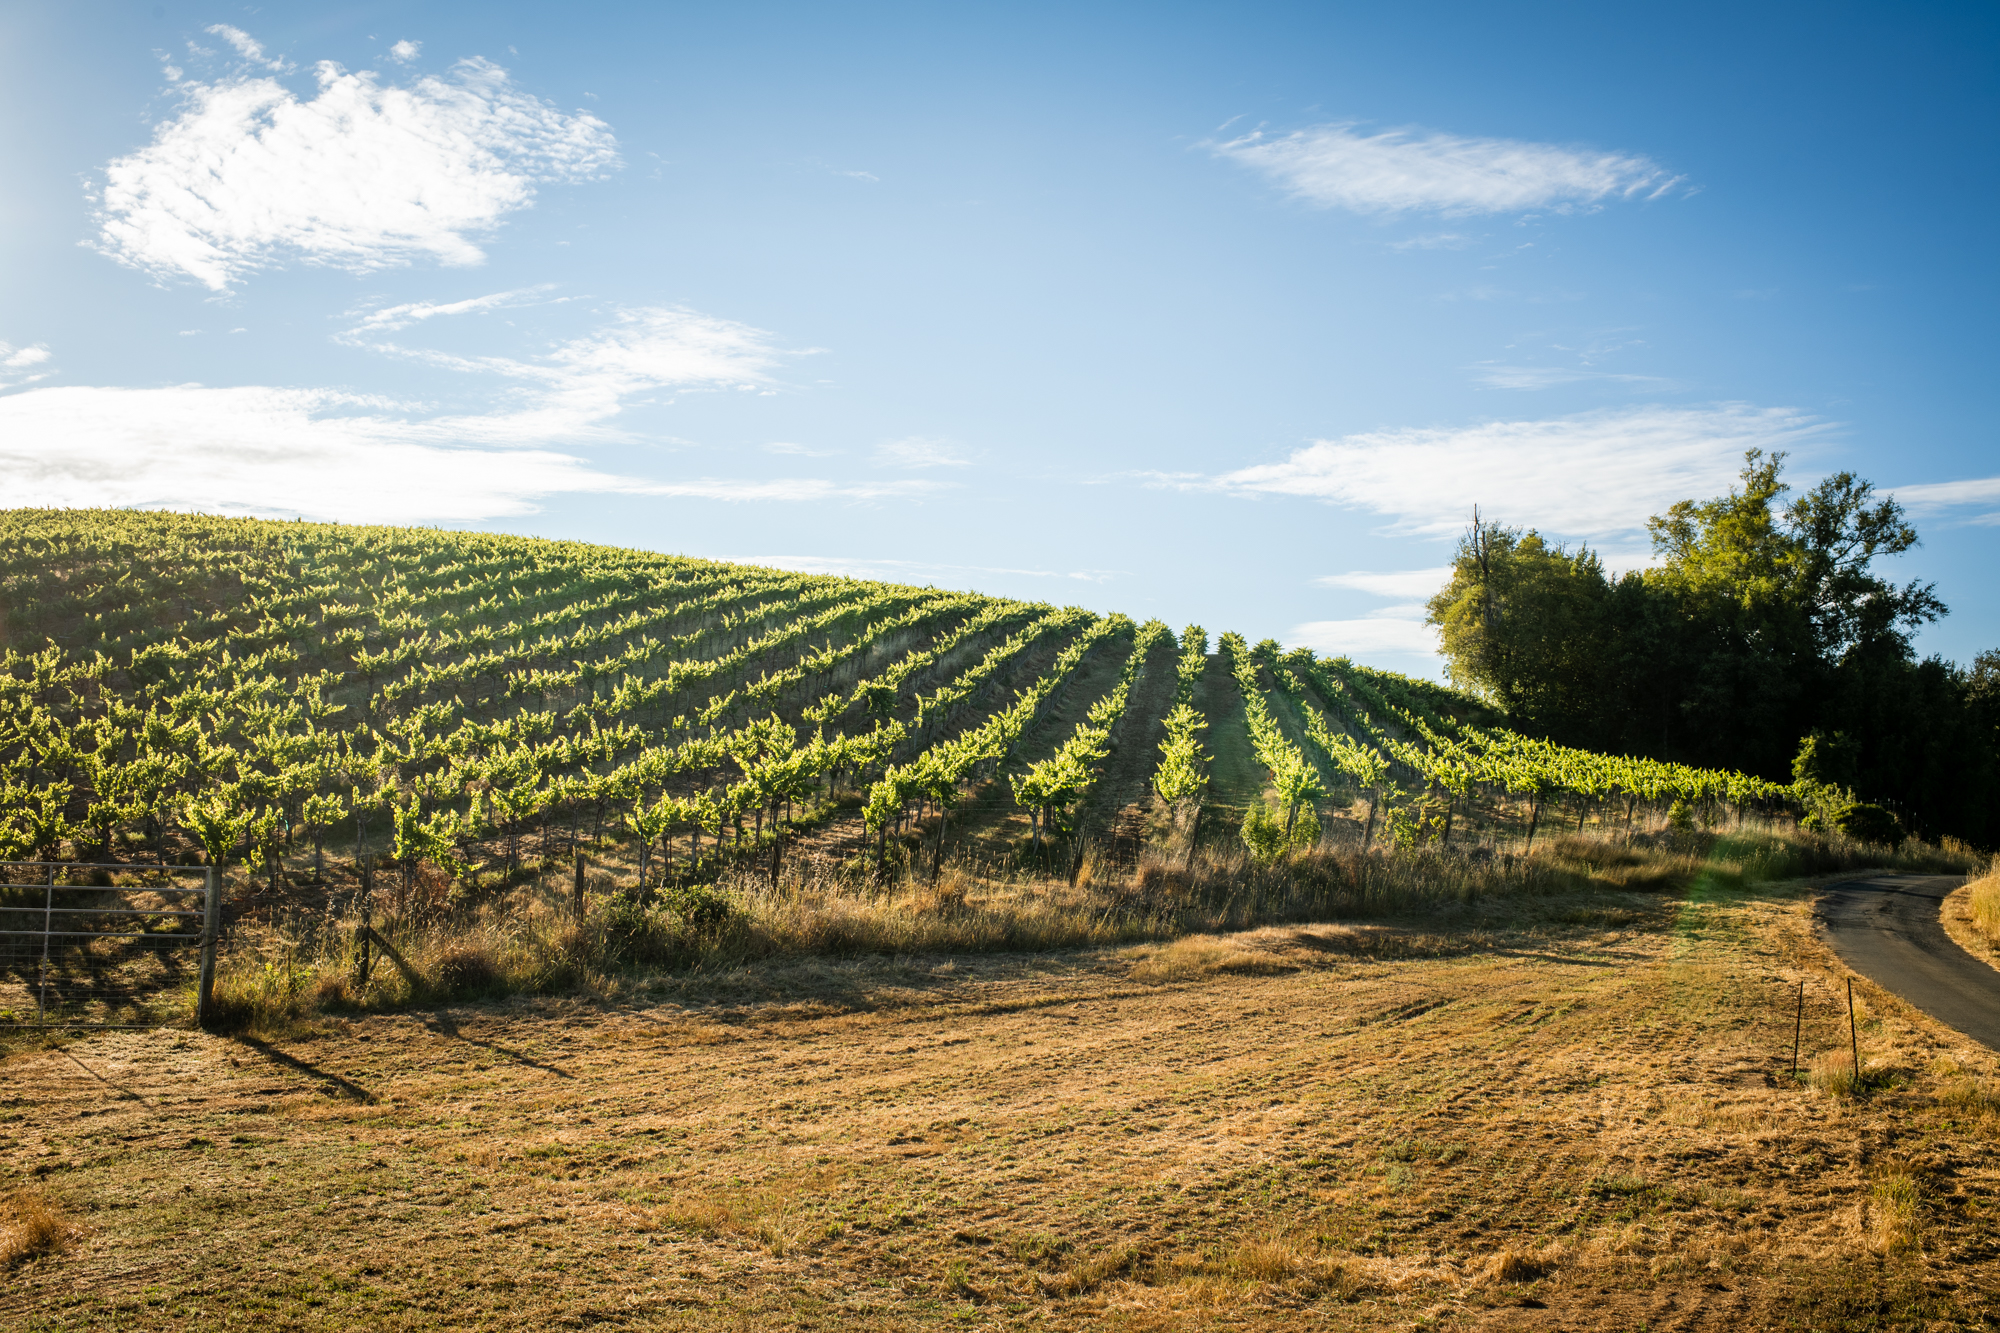 Vineyard on slope under blue sky